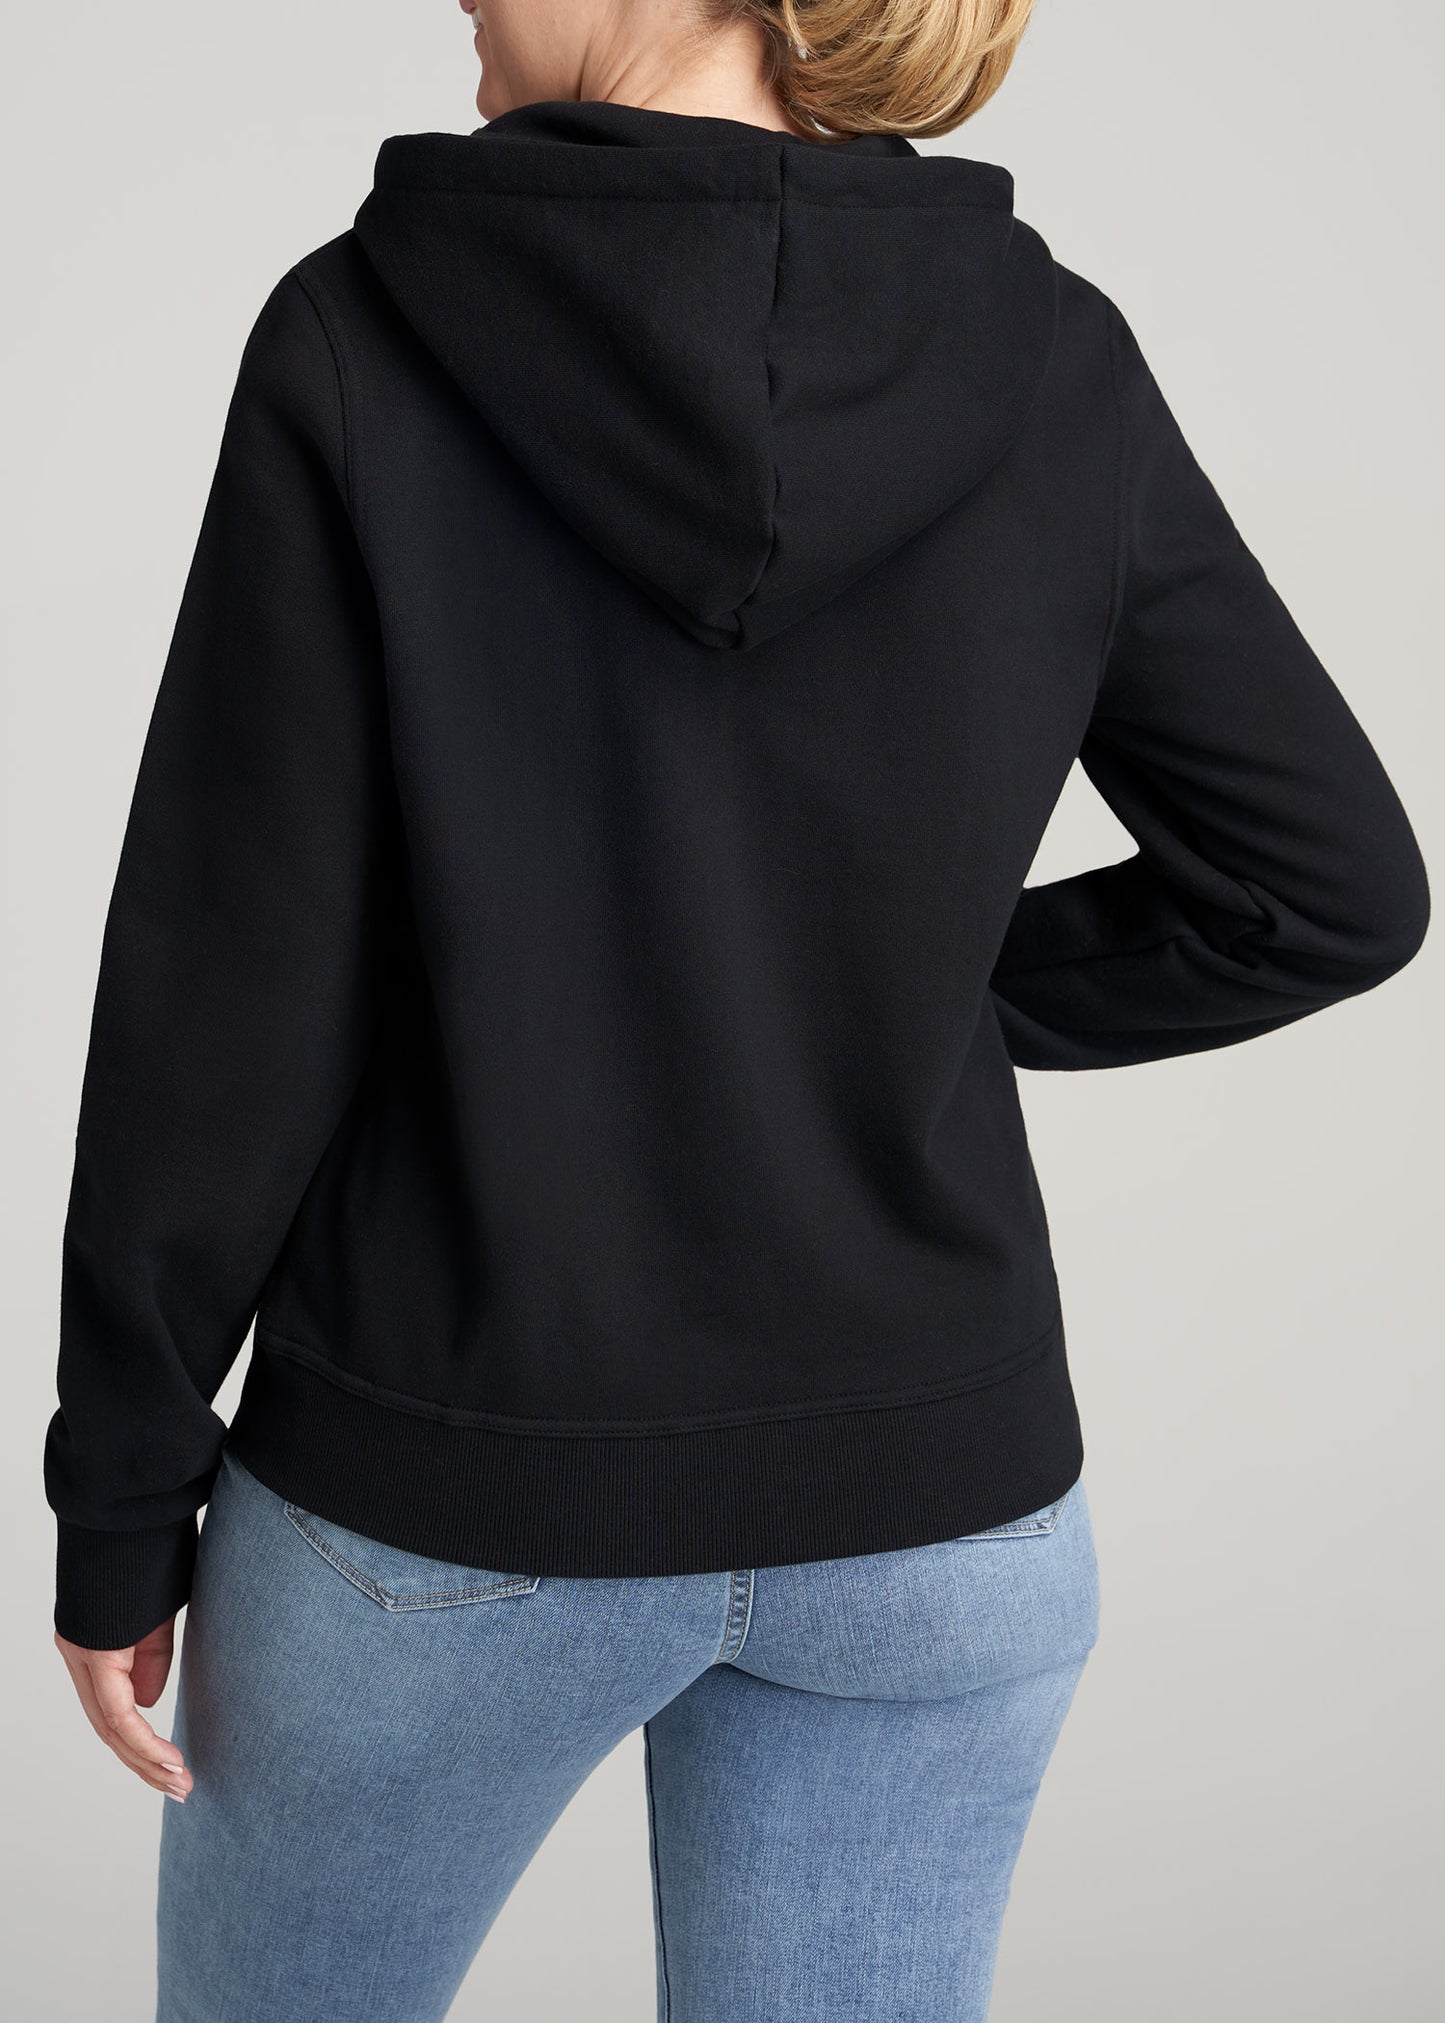 Women Black Zip Up Hoodie: Tall Wearever Full Zip Black Hoodie – American  Tall